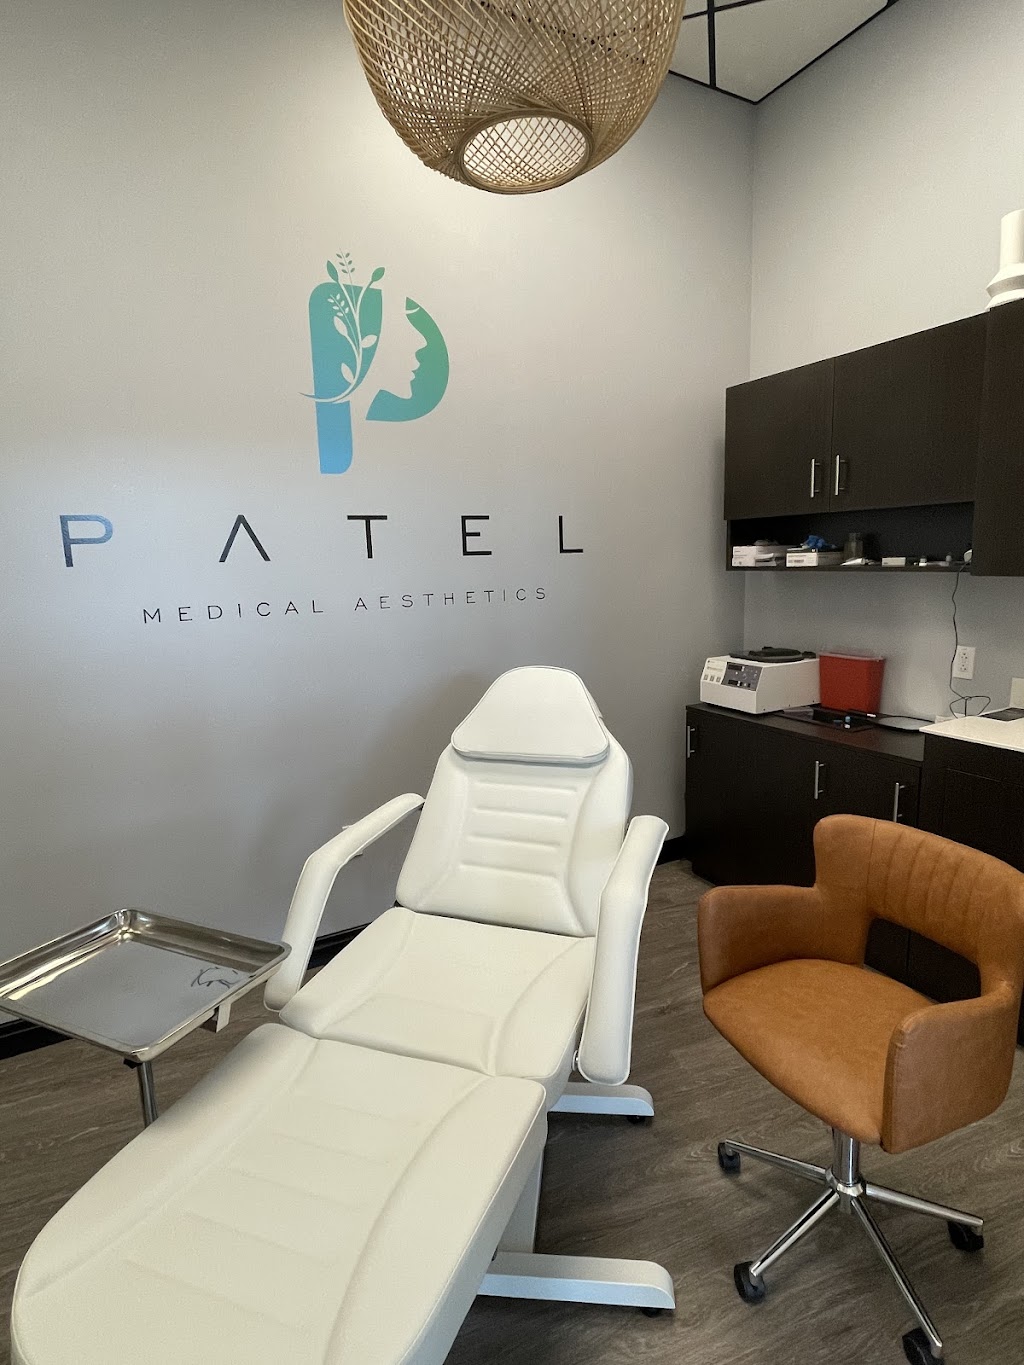 Patel Medical Aesthetics | MY SALON SUITE 430, Marketplace Blvd, Hamilton Township, NJ 08691 | Phone: (609) 447-5230